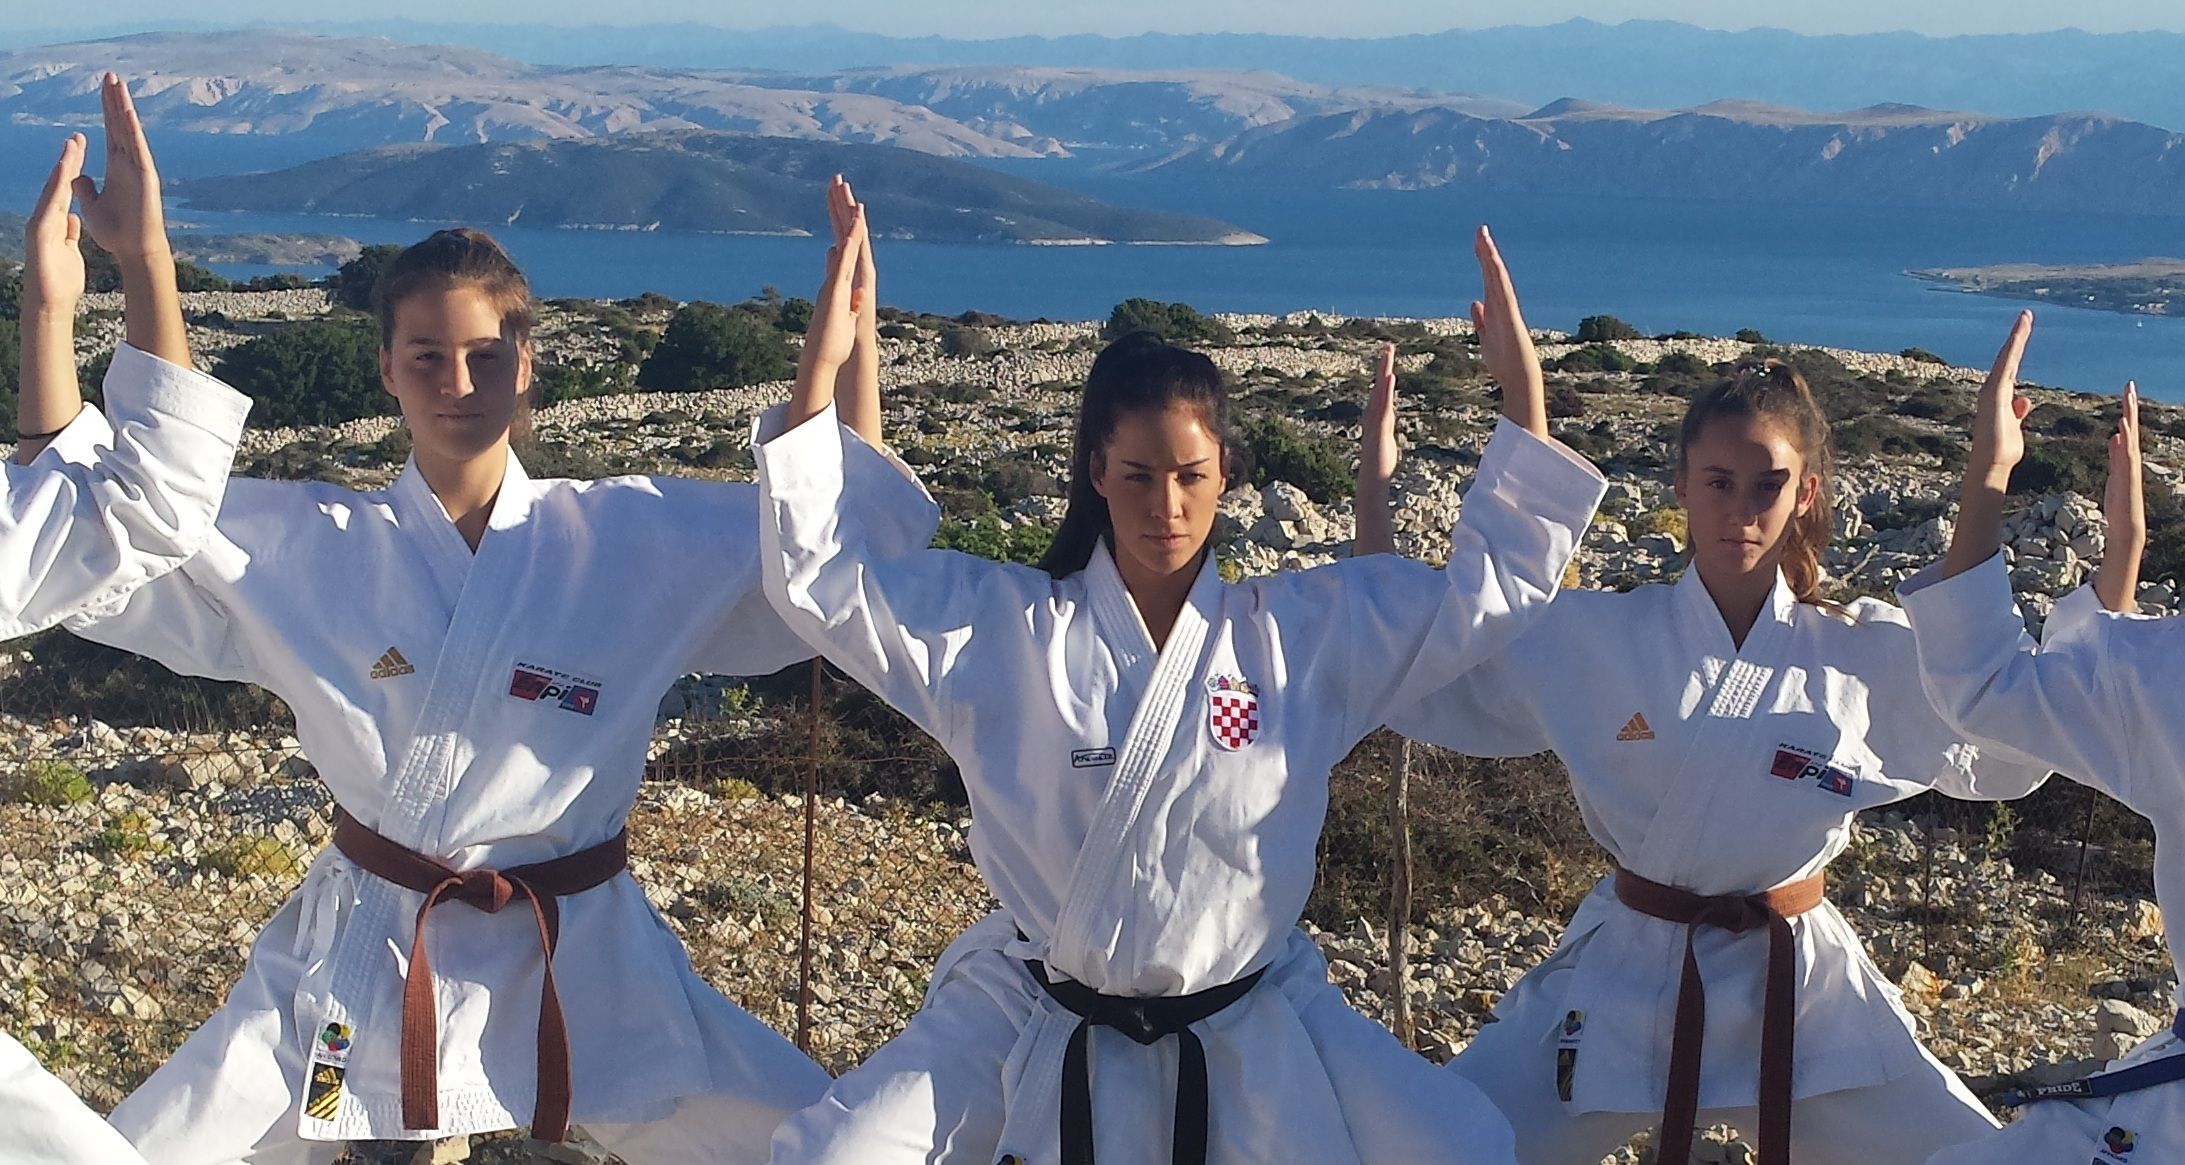 Nakon aktivnog ljeta, seminara i treninga, članovi karate kluba RAB – ENPI sjajno krenuli u novu sezonu